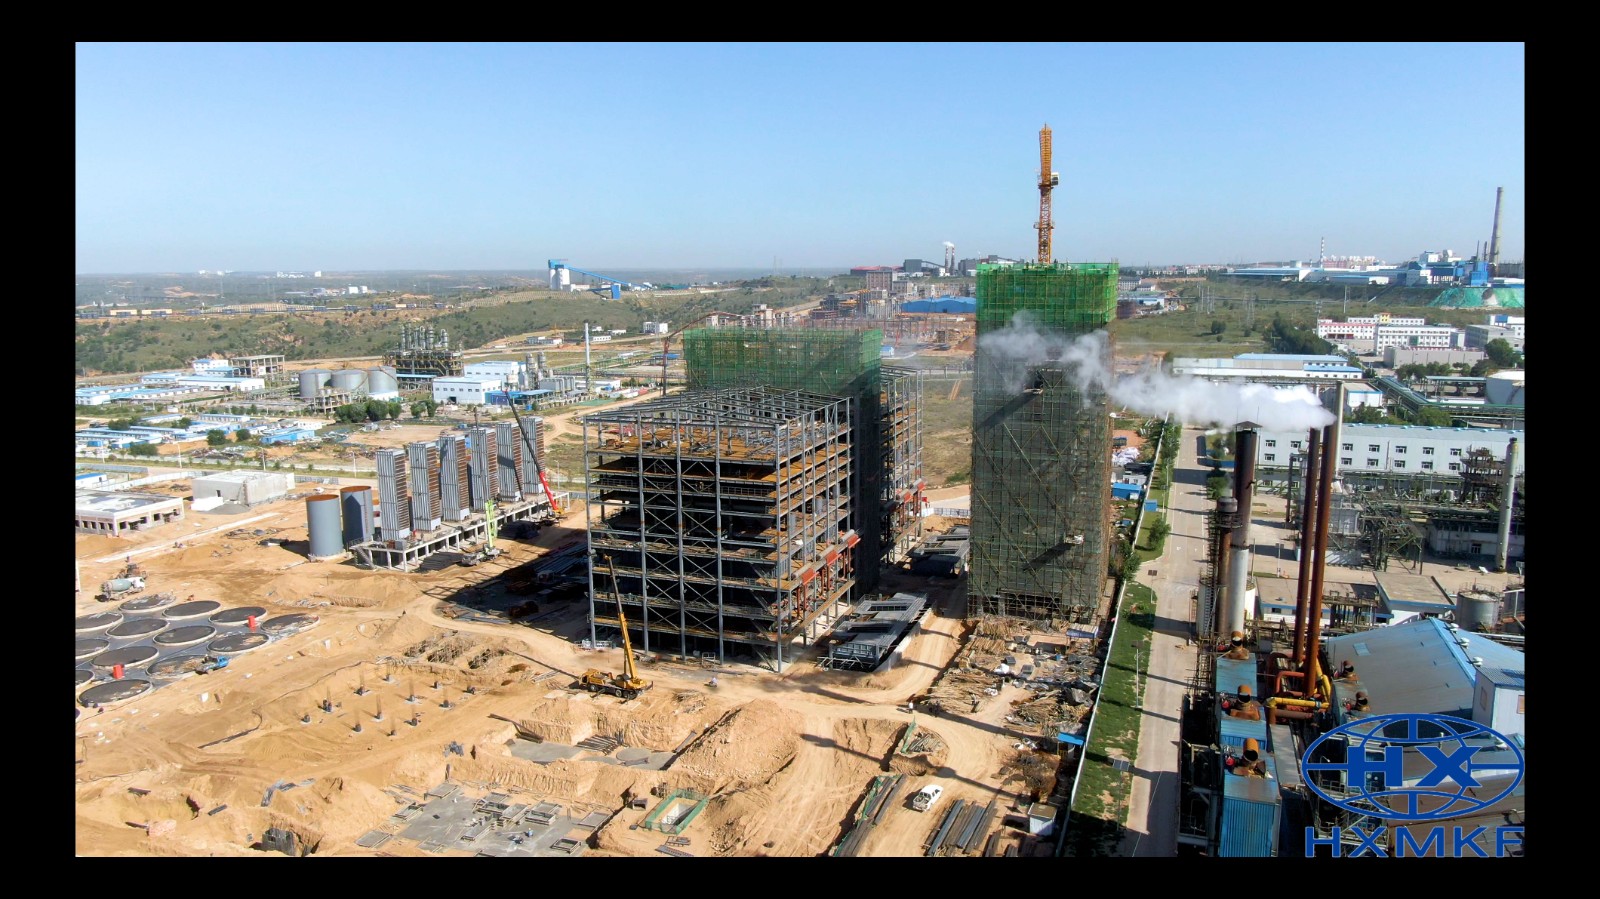 公司承建的陕西煤业化工集团神木天元化工有限公司年产135万吨兰炭装置主体结构完成